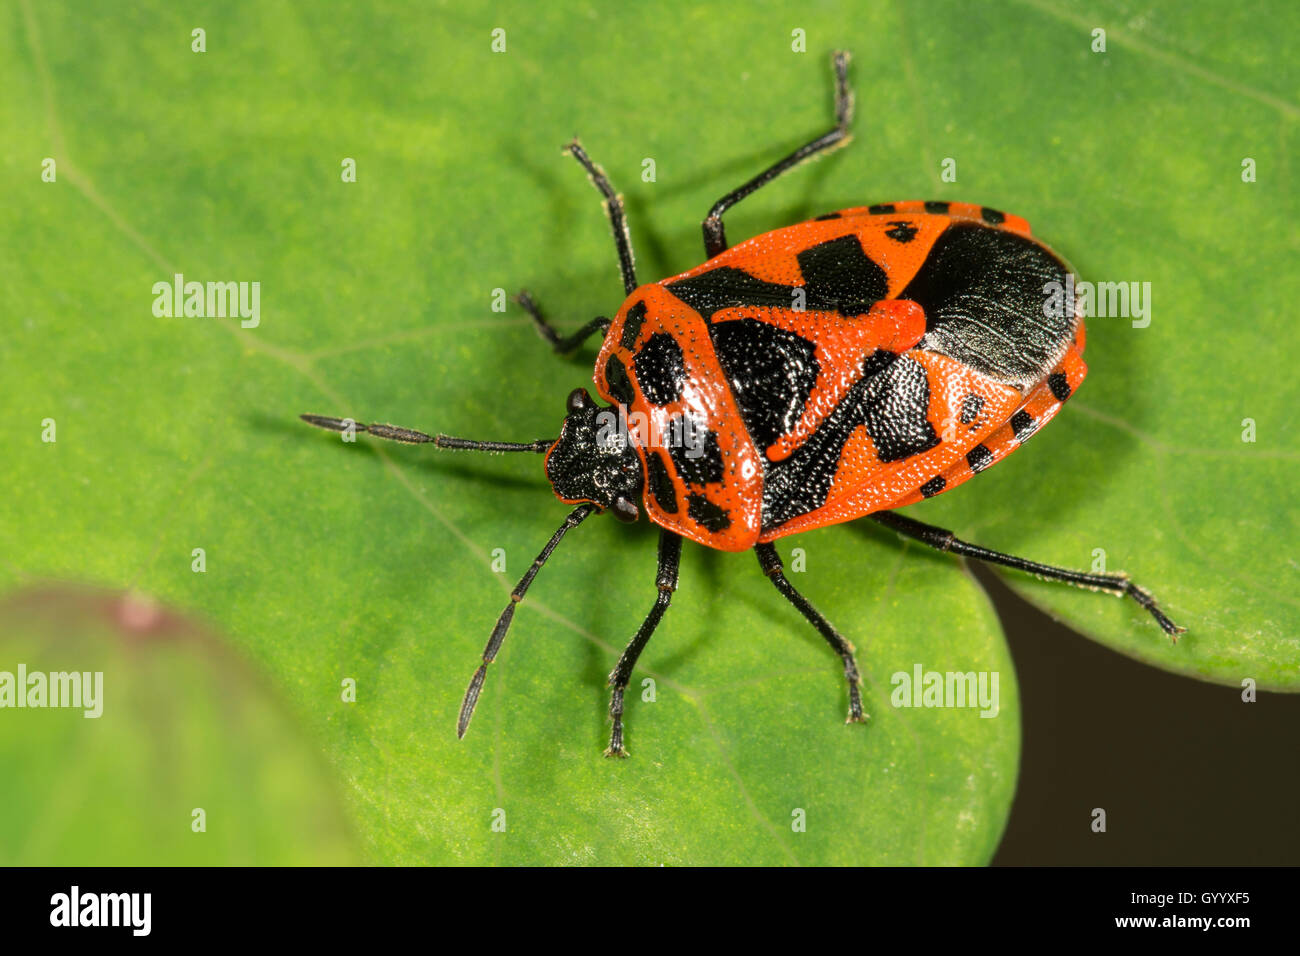 Red and black shield bug (Eurydema dominulus) on leaf, Baden-Württemberg, Germany Stock Photo